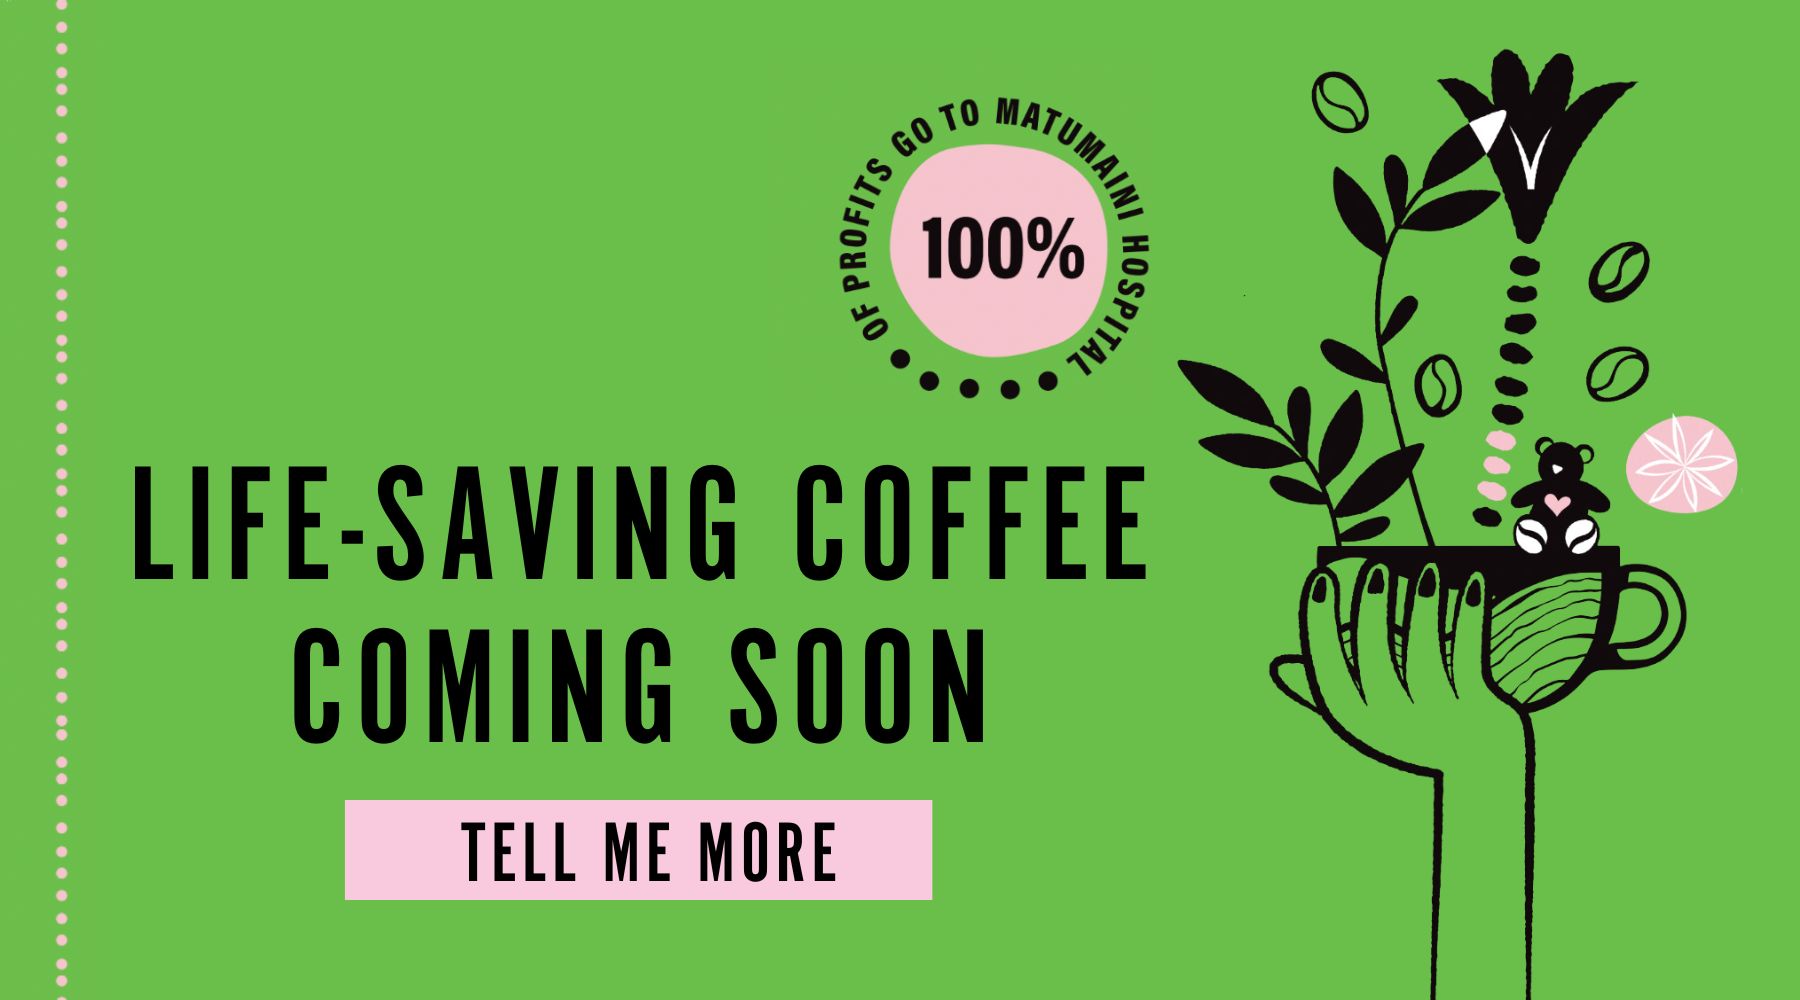 Rebuild Women's Hope coffee launching soon